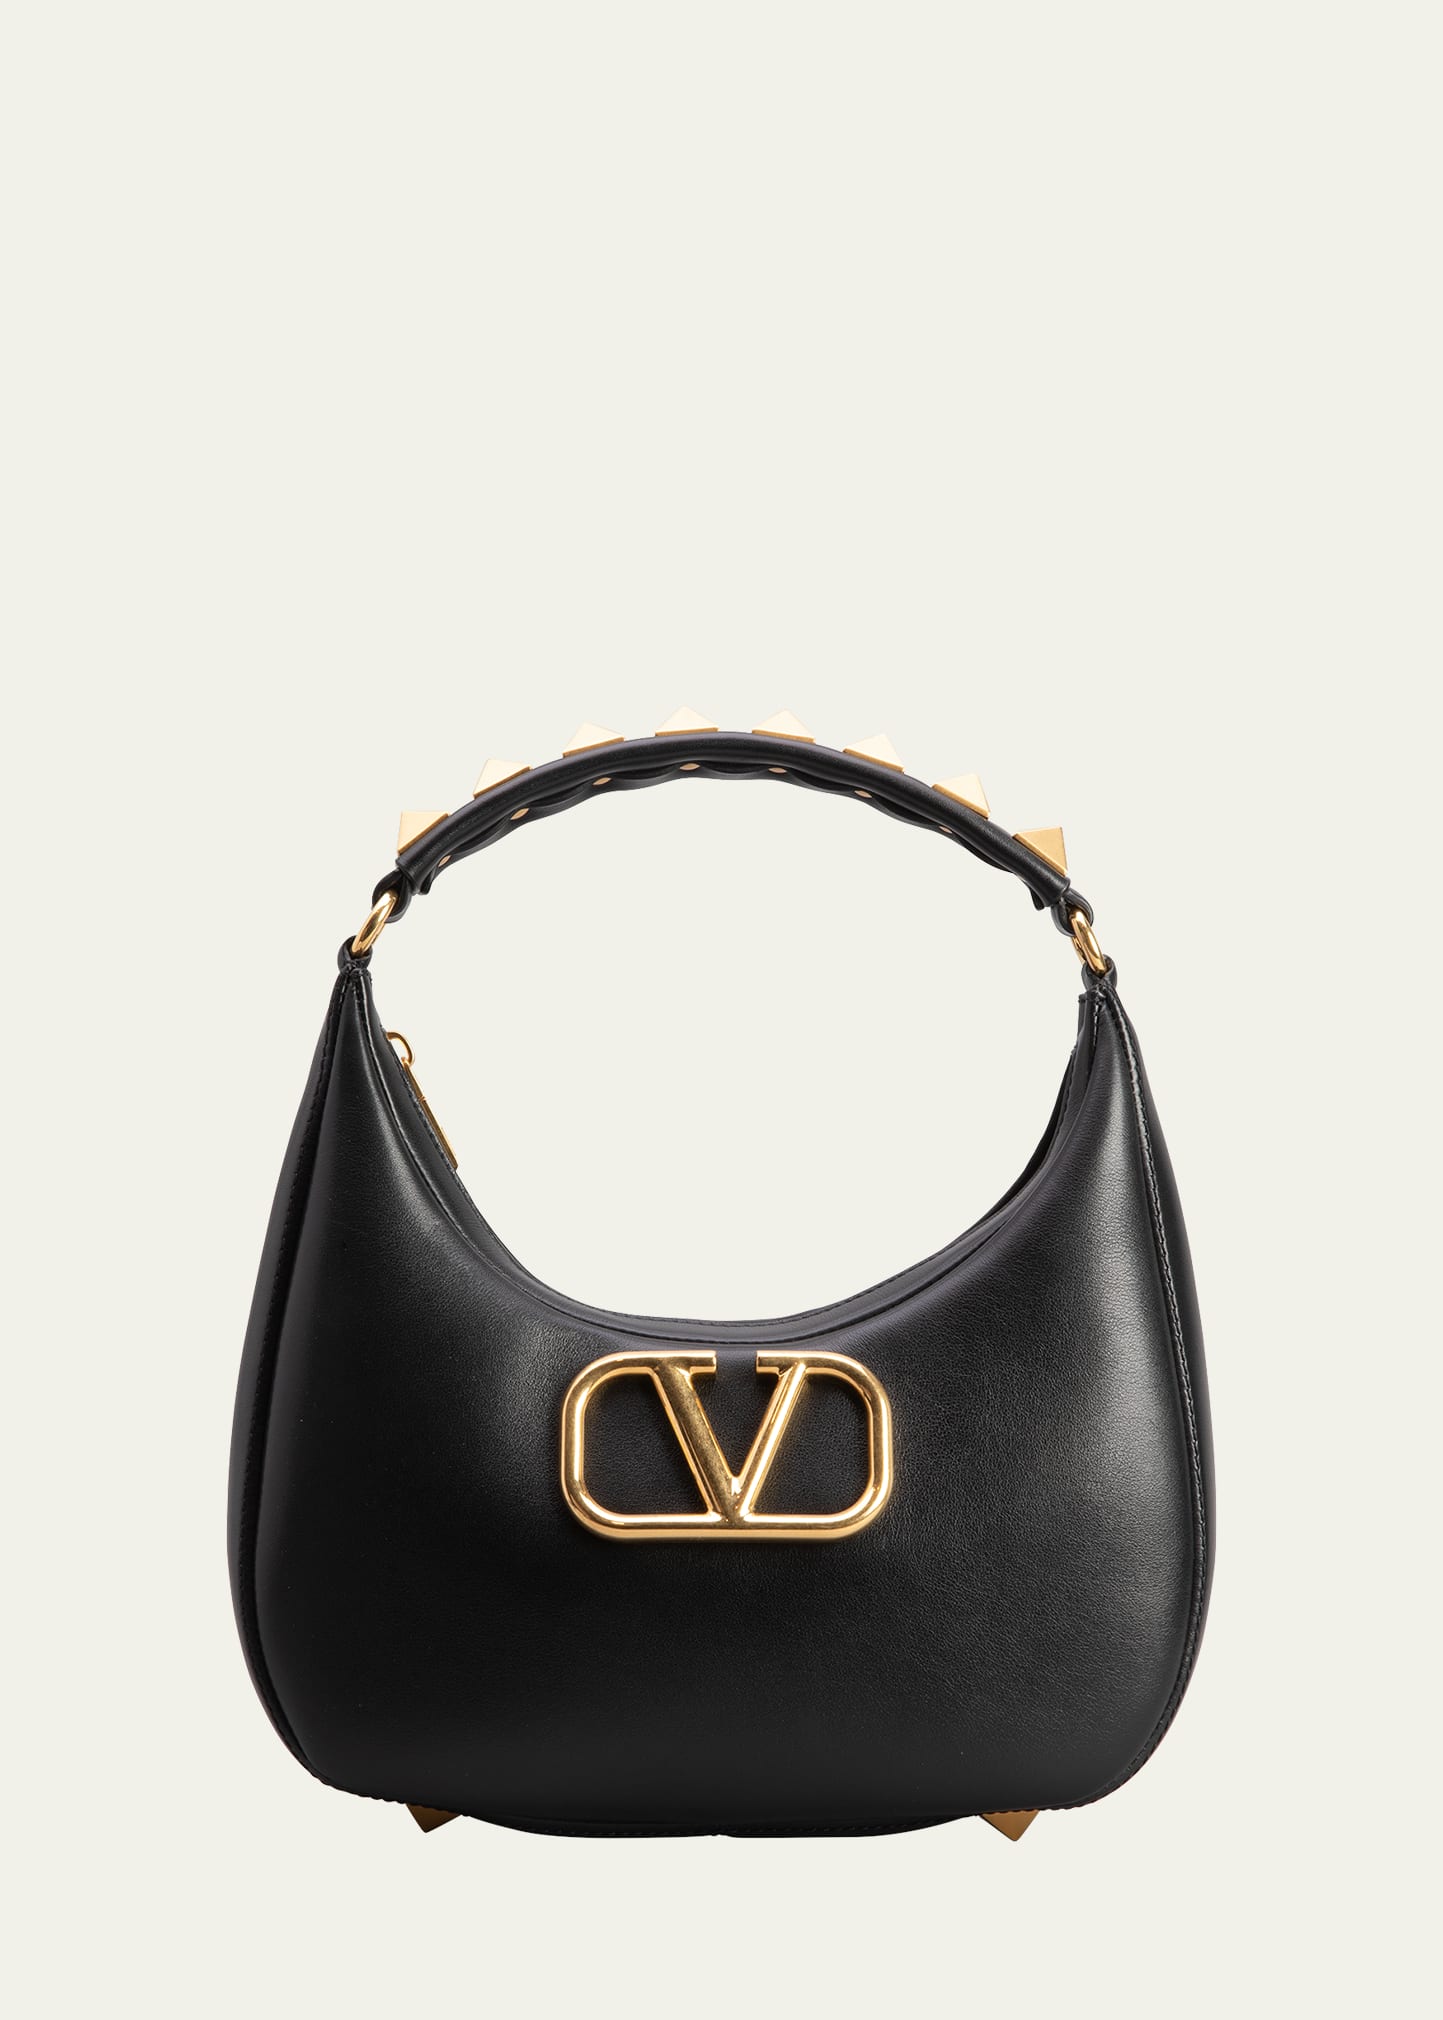 $2850 Valentino Garavani VLogo Leather Shoulder Bag